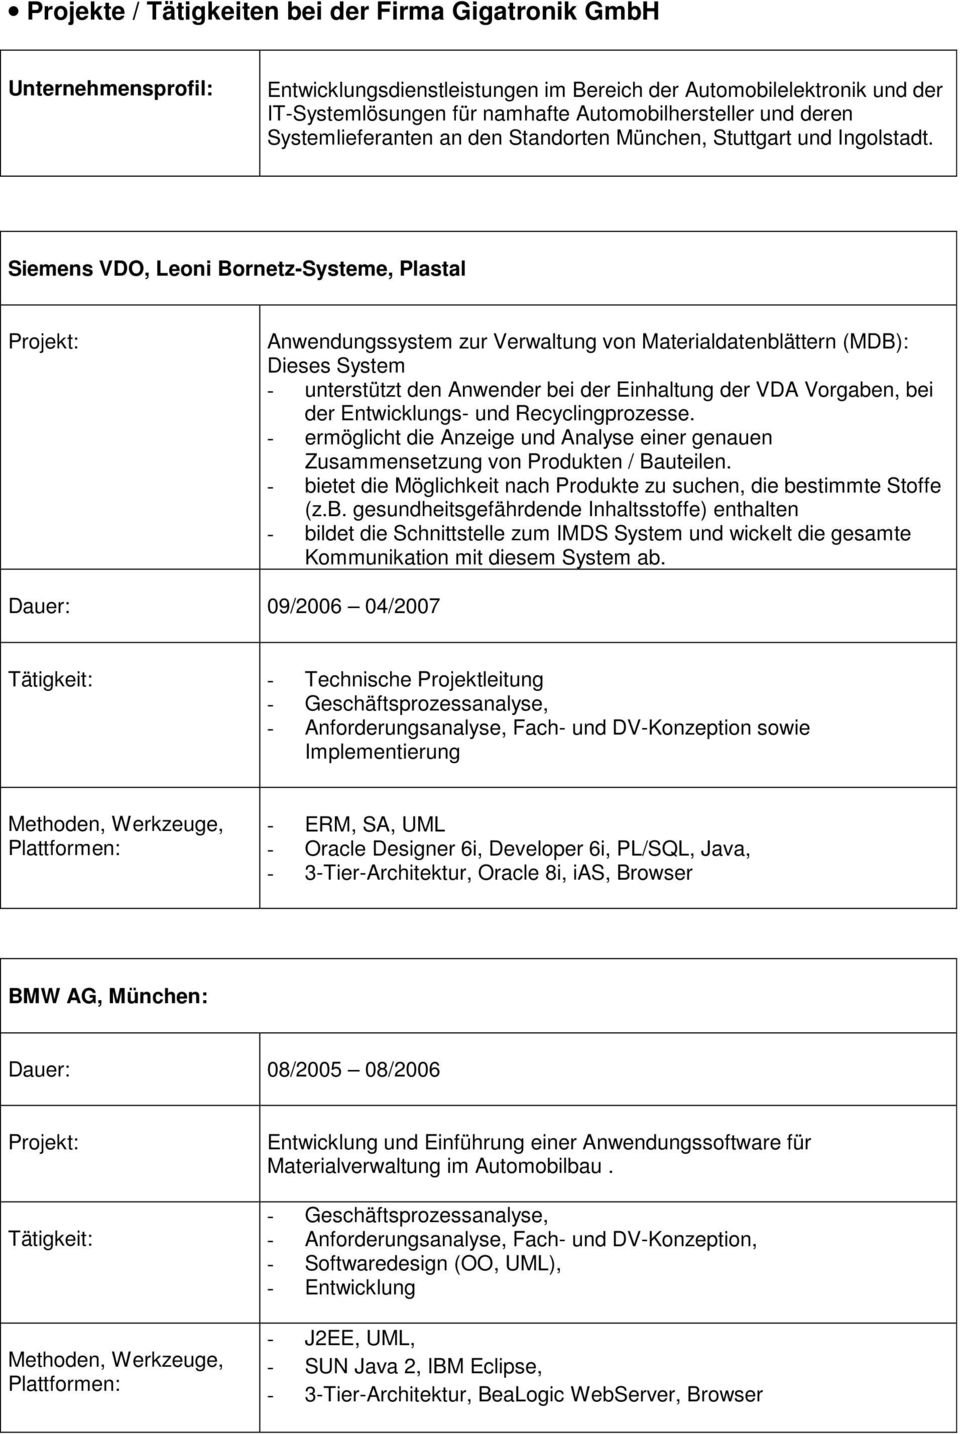 Siemens VDO, Leoni Bornetz-Systeme, Plastal Anwendungssystem zur Verwaltung von Materialdatenblättern (MDB): Dieses System - unterstützt den Anwender bei der Einhaltung der VDA Vorgaben, bei der